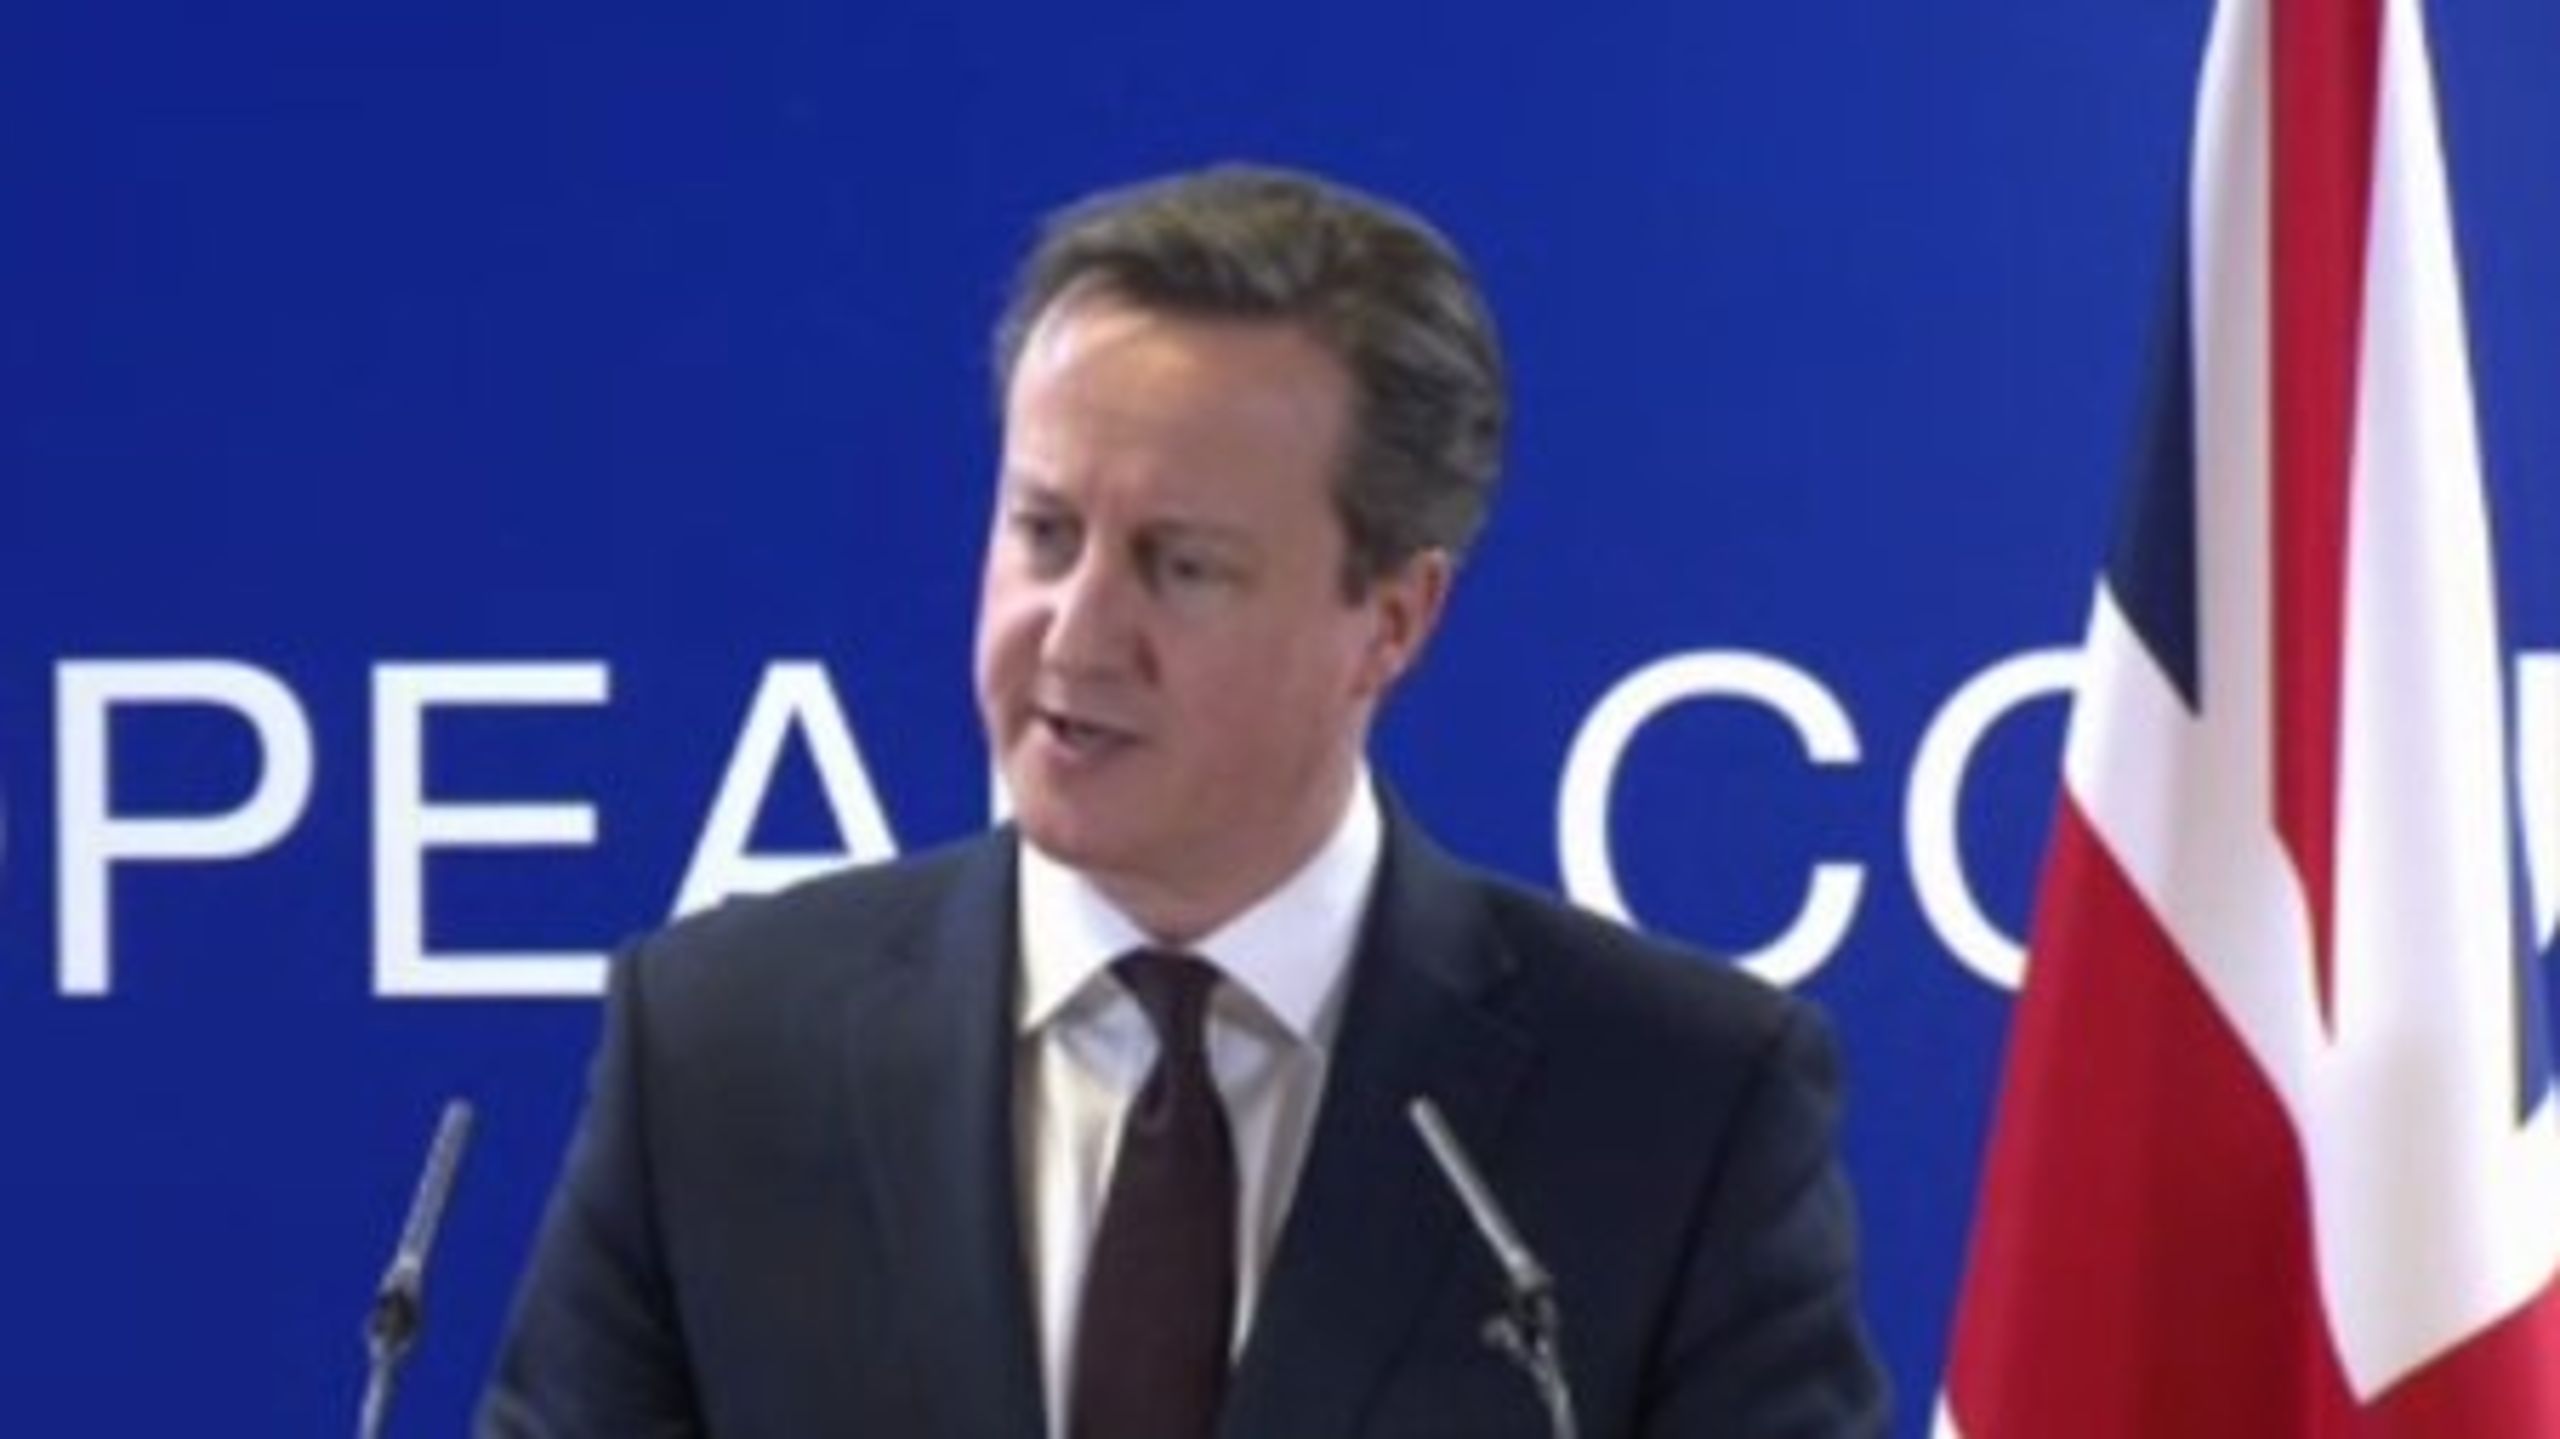 <br>Storbritanniens premiärminister David Cameron ska nu gå vidare med planerna på omförhandling av det brittiska EU-medlemskapet.<br>